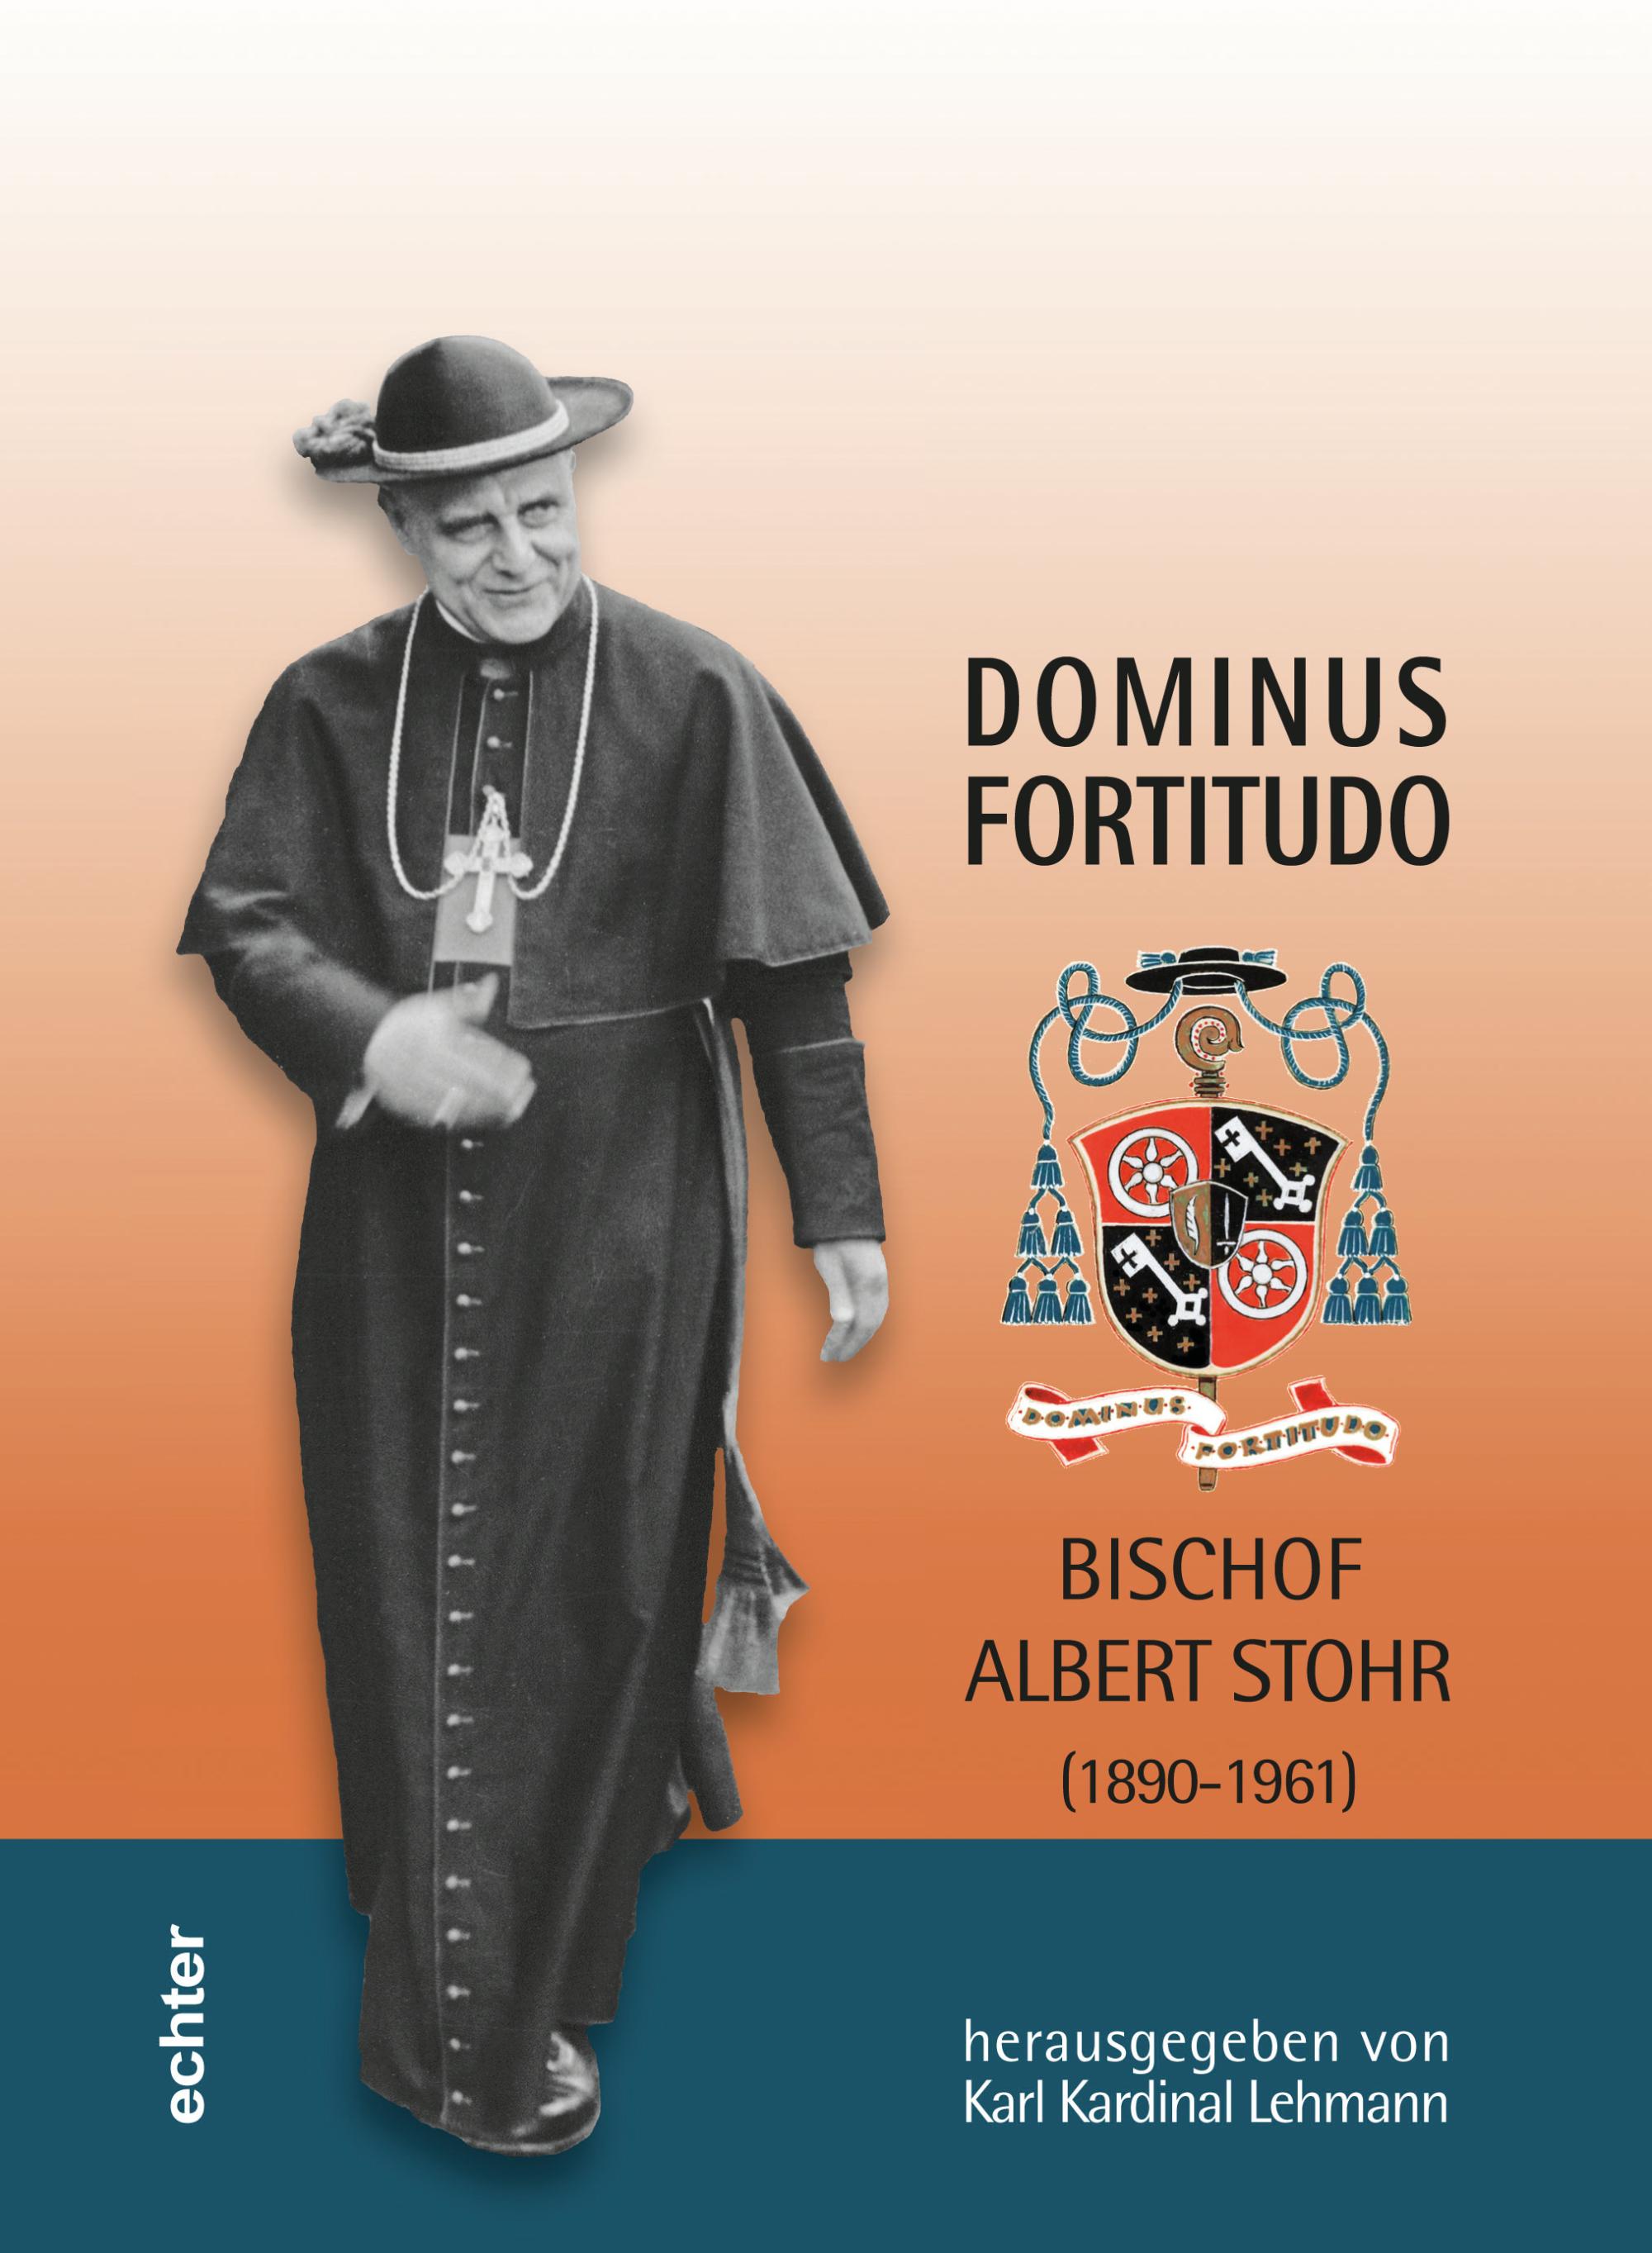 Dominus fortitudo